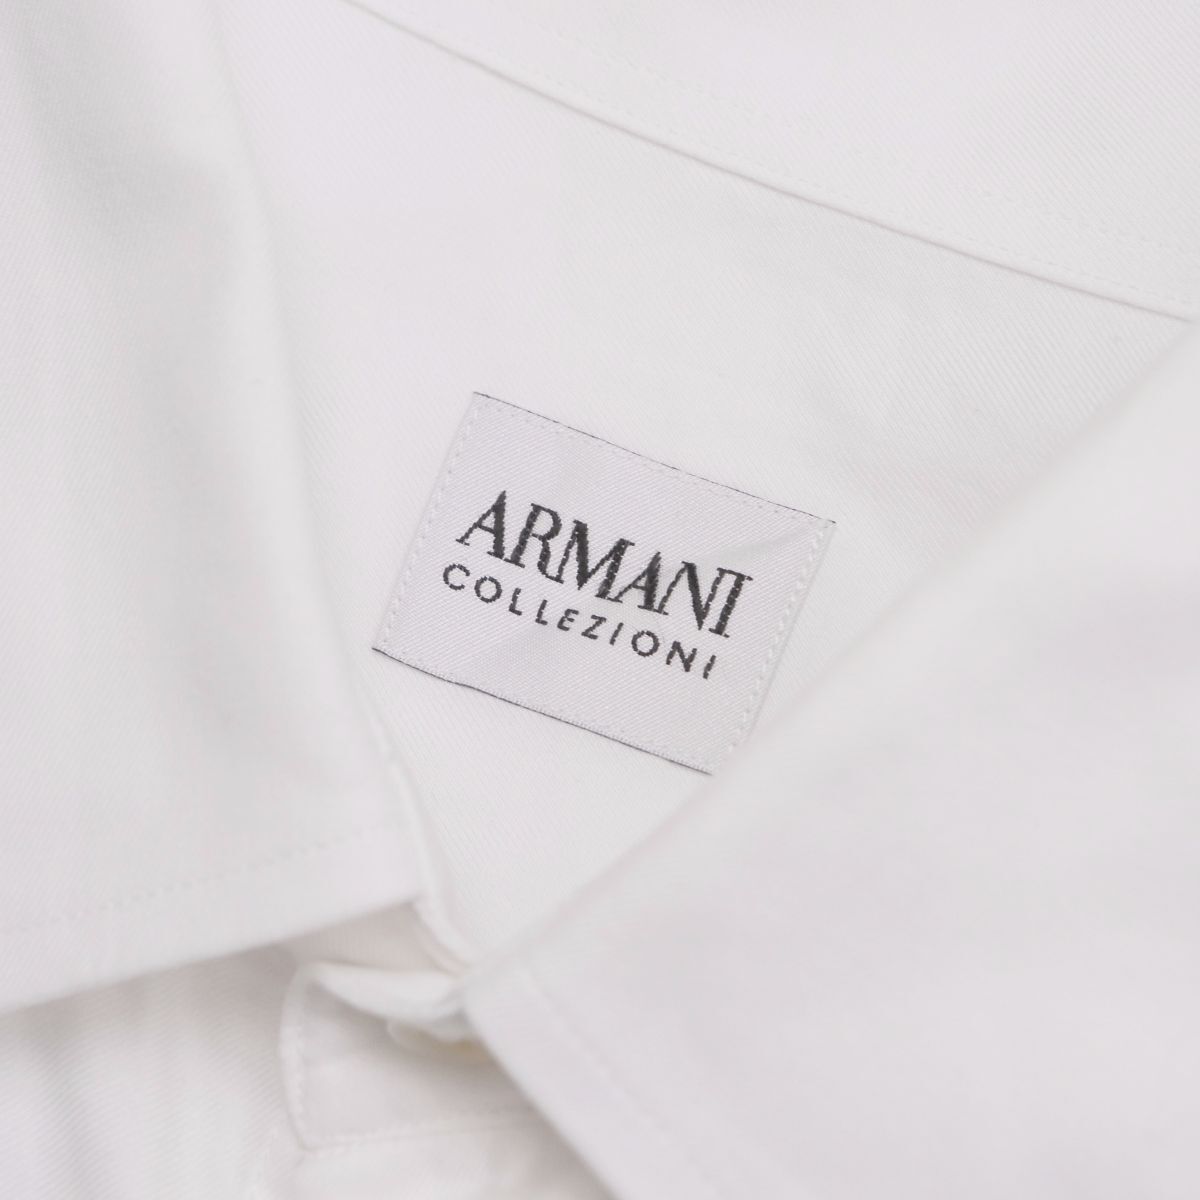 W1543 Armani ko let's .o-ni*2 позиций комплект * постоянный цвет рубашка + двойной запонки рубашка * оттенок белого * хлопок * рубашка с длинным рукавом * мужской 